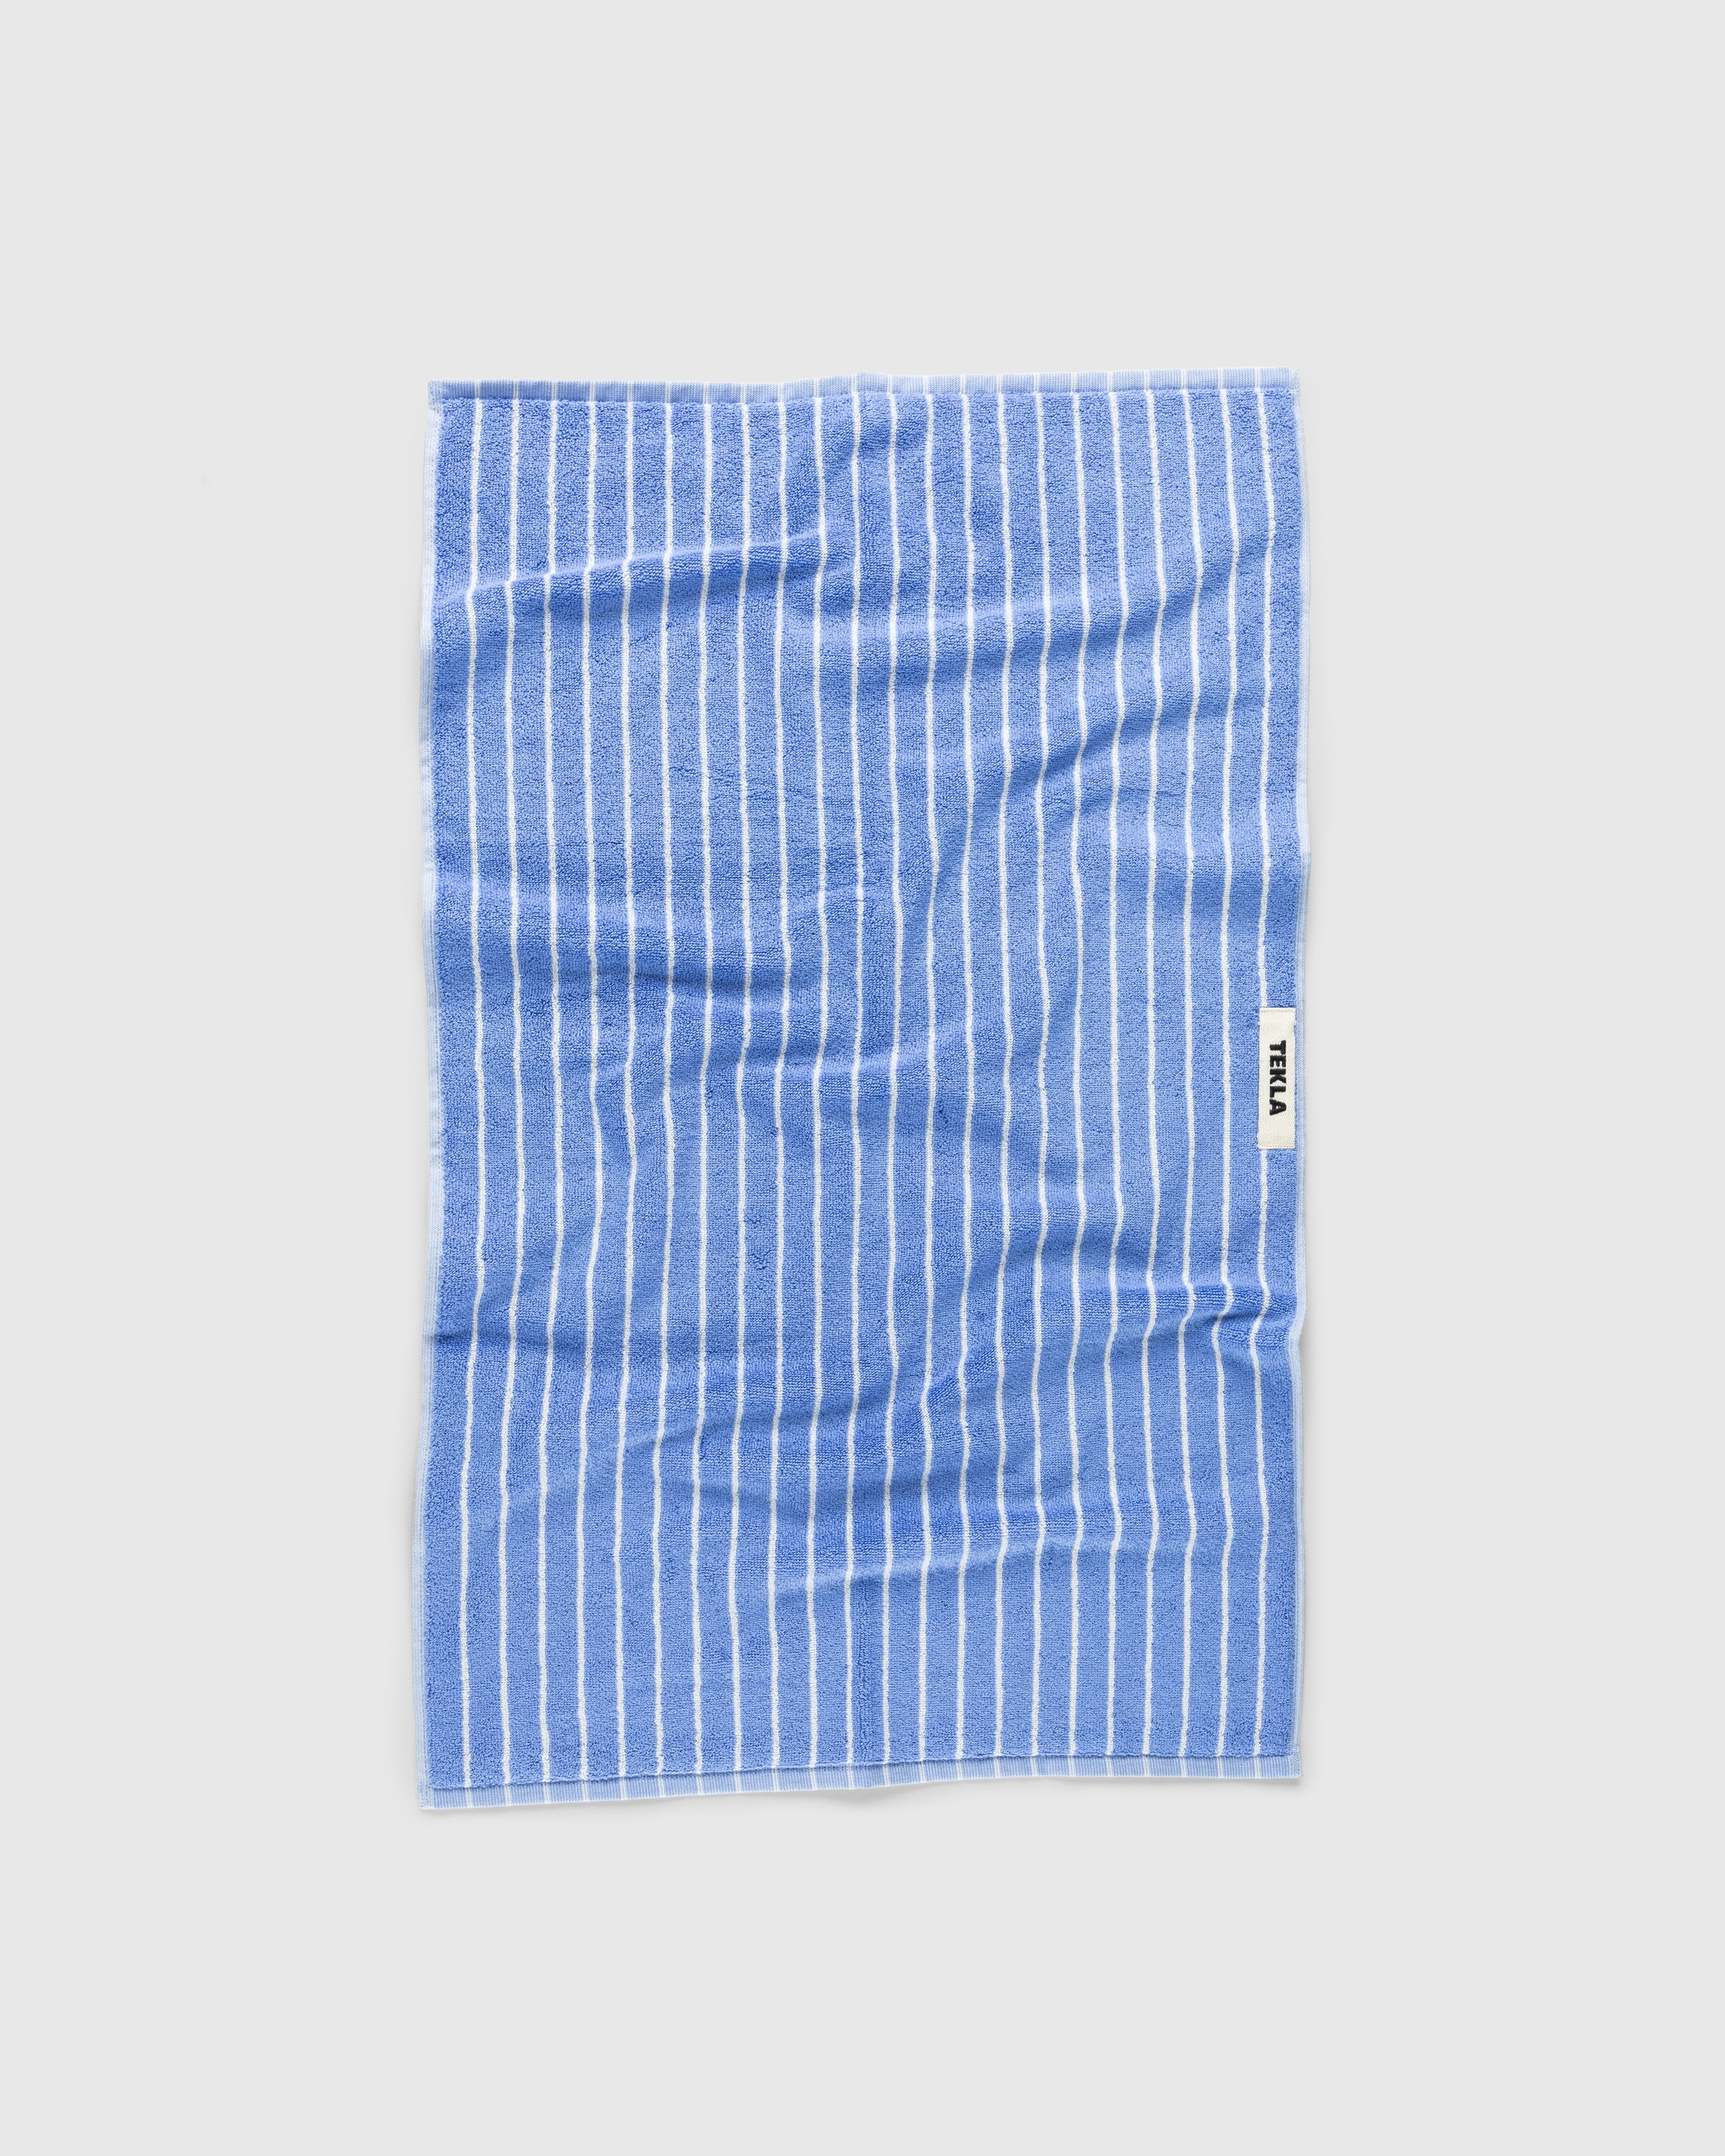 Tekla - Guest Towel 30x50 Clear Blue Stripes - Lifestyle - Blue - Image 1